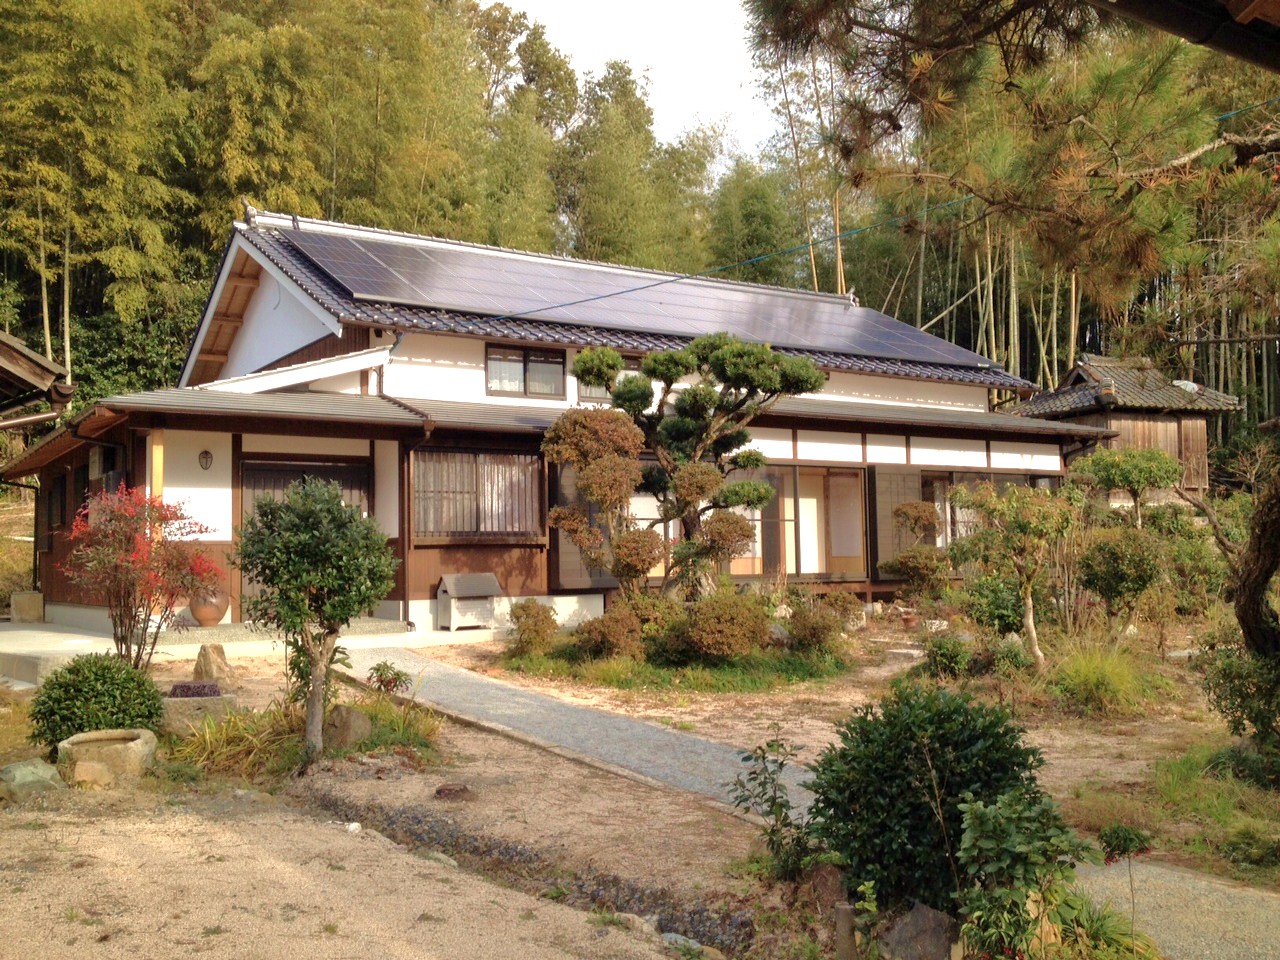 津山市籾保にある仁木永祐が暮らした家。代々医業を営んだ家らしい堂々とした構えだ